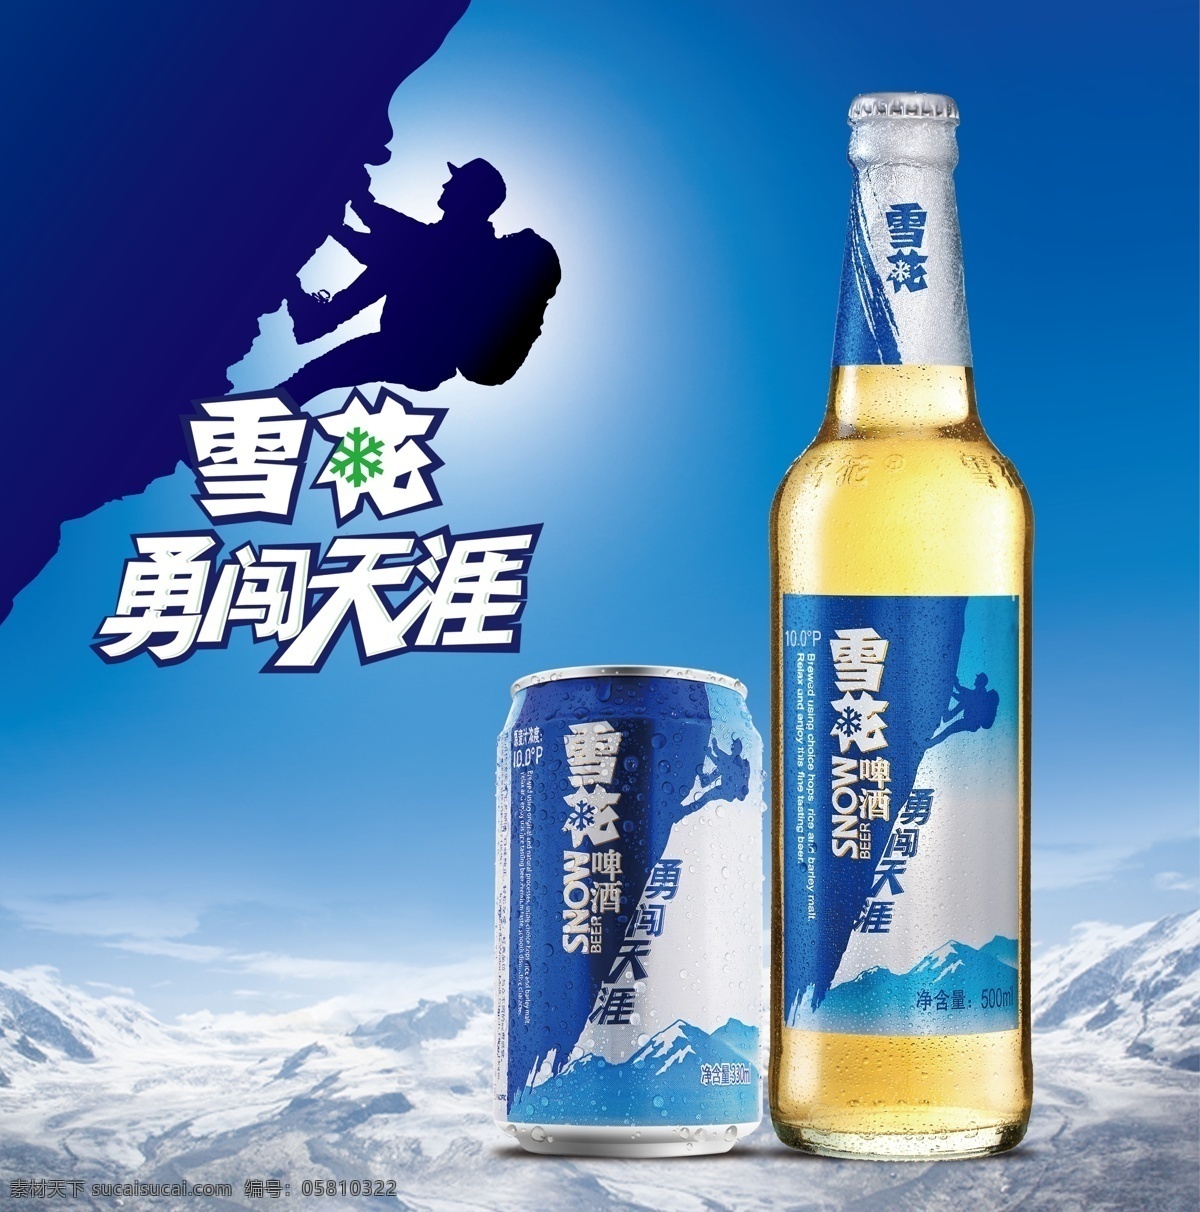 雪花啤酒广告 雪花横版贴 啤酒分层素材 雪地攀崖人像 雪花啤酒标志 2015 新 元素